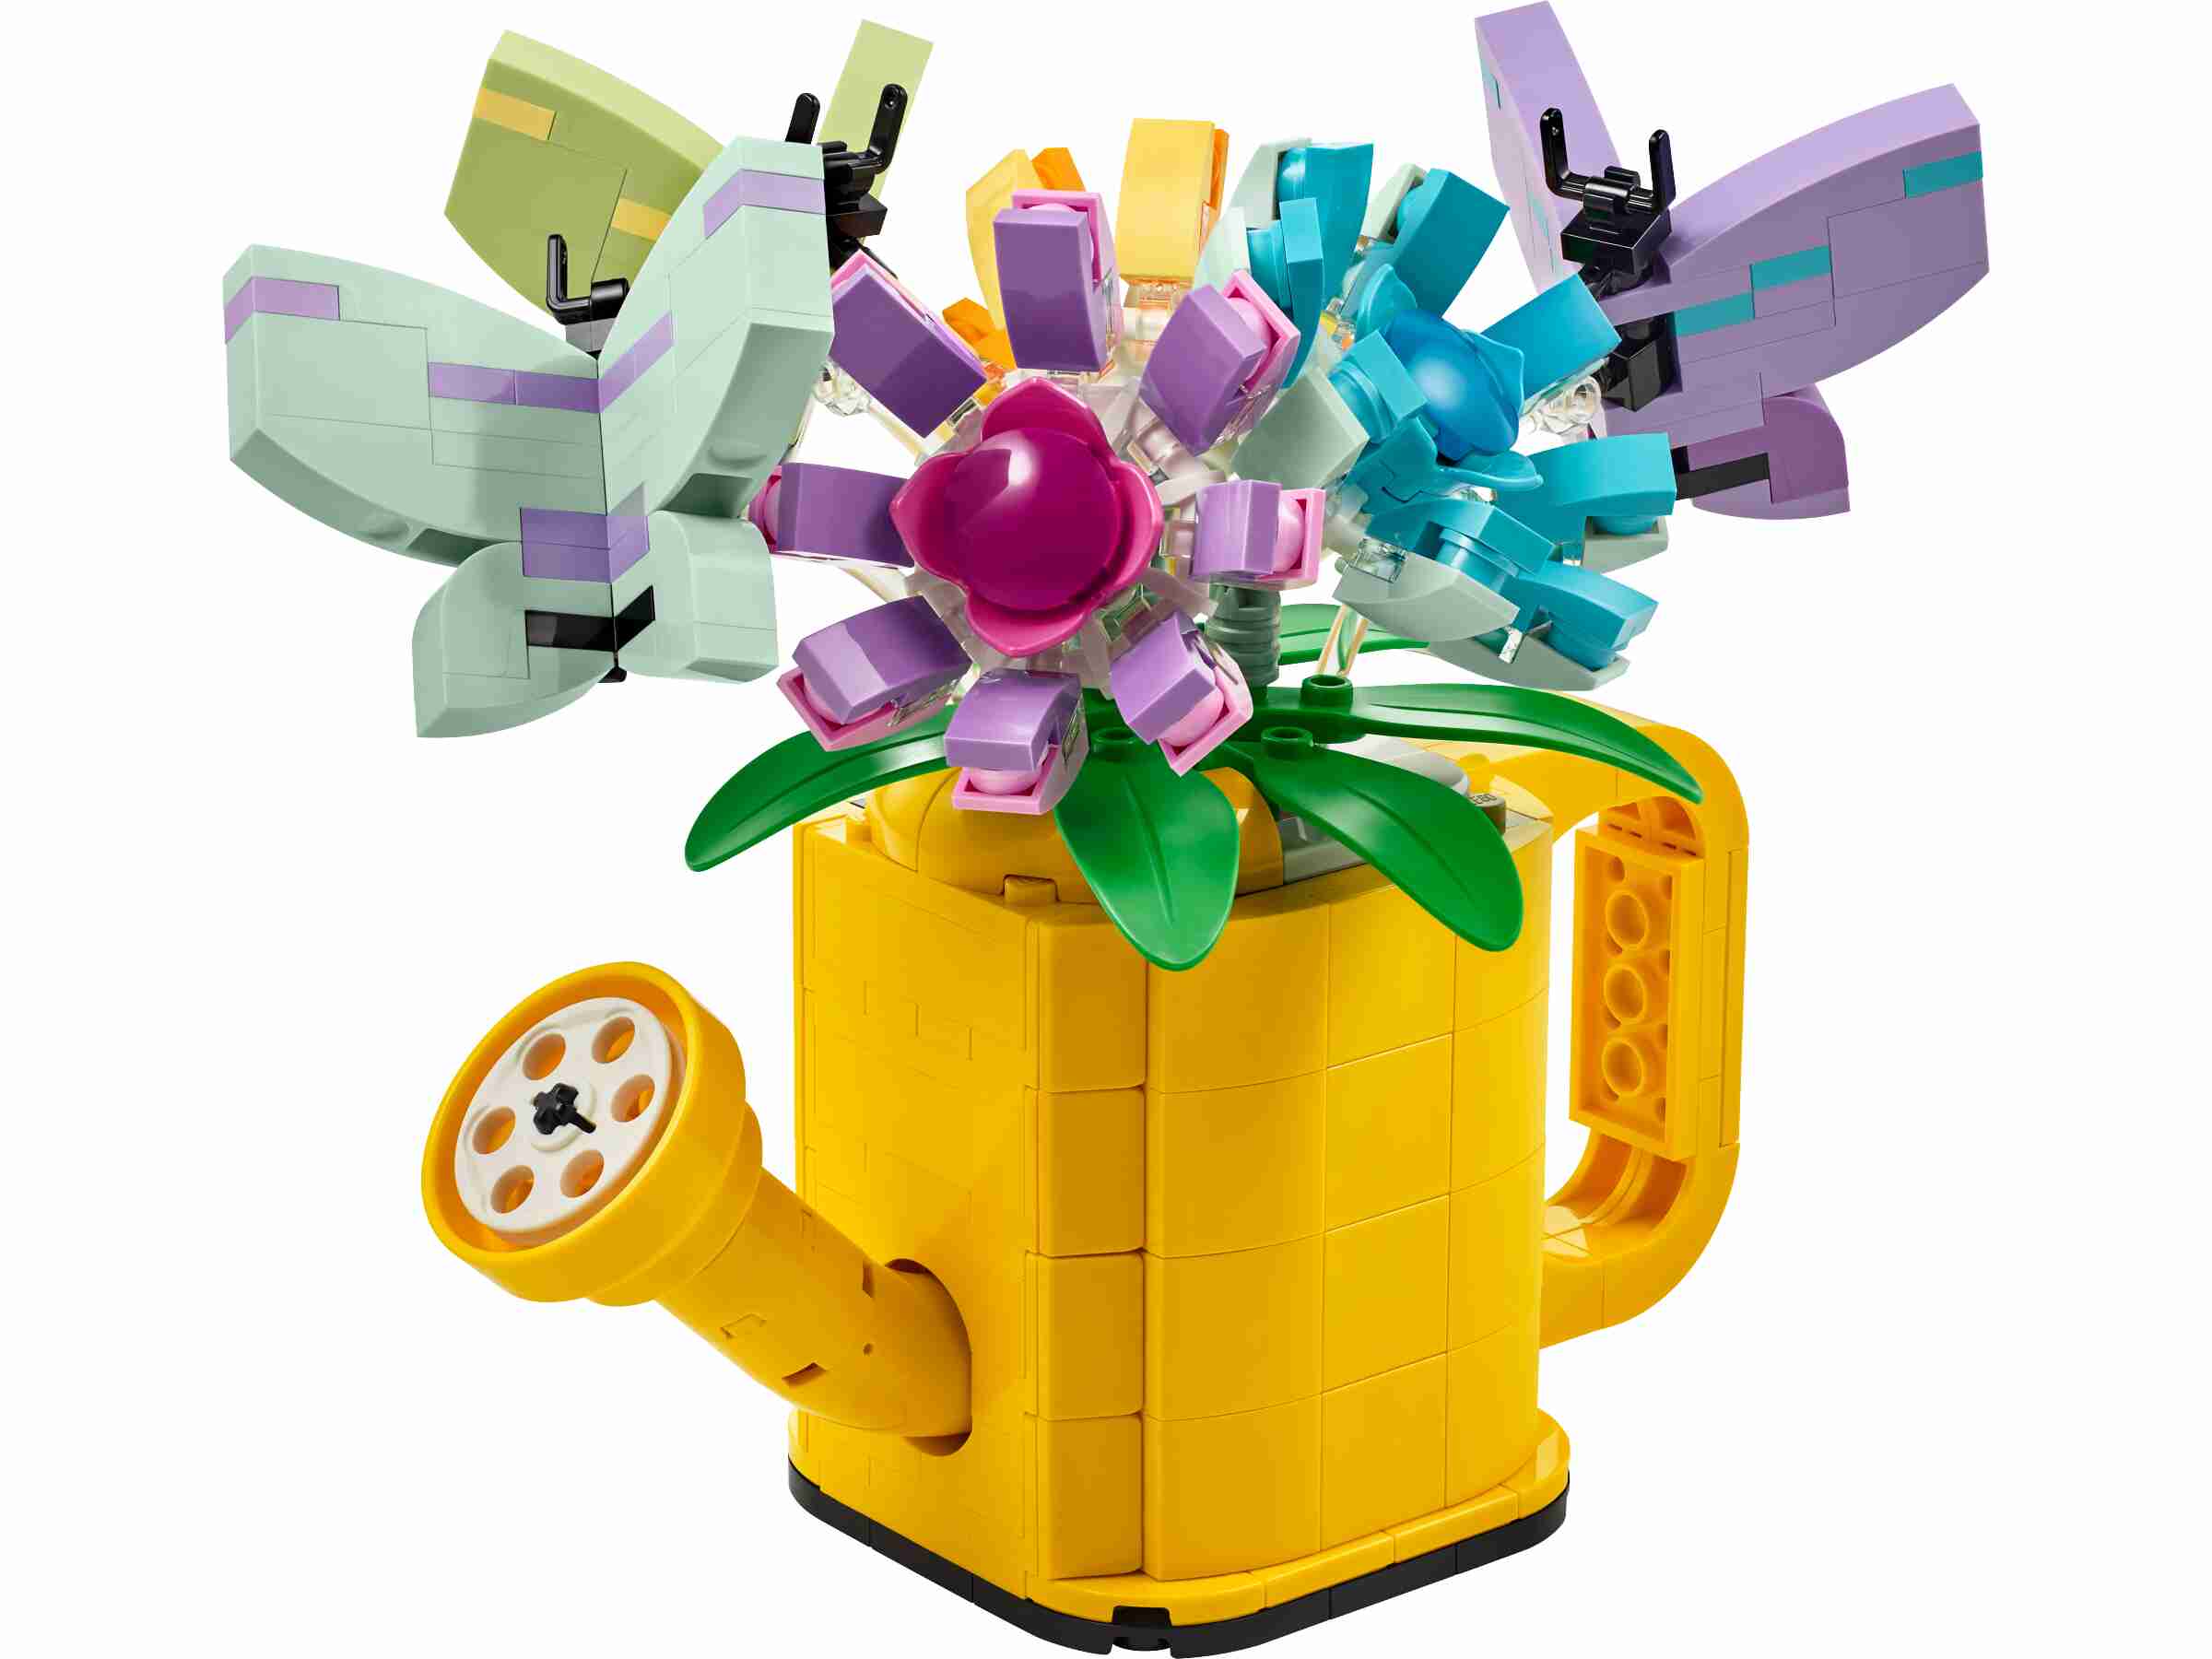 LEGO 31149 Creator 3-in-1 Gießkanne mit Blumen, 2 Vögel oder Gummistiefel 